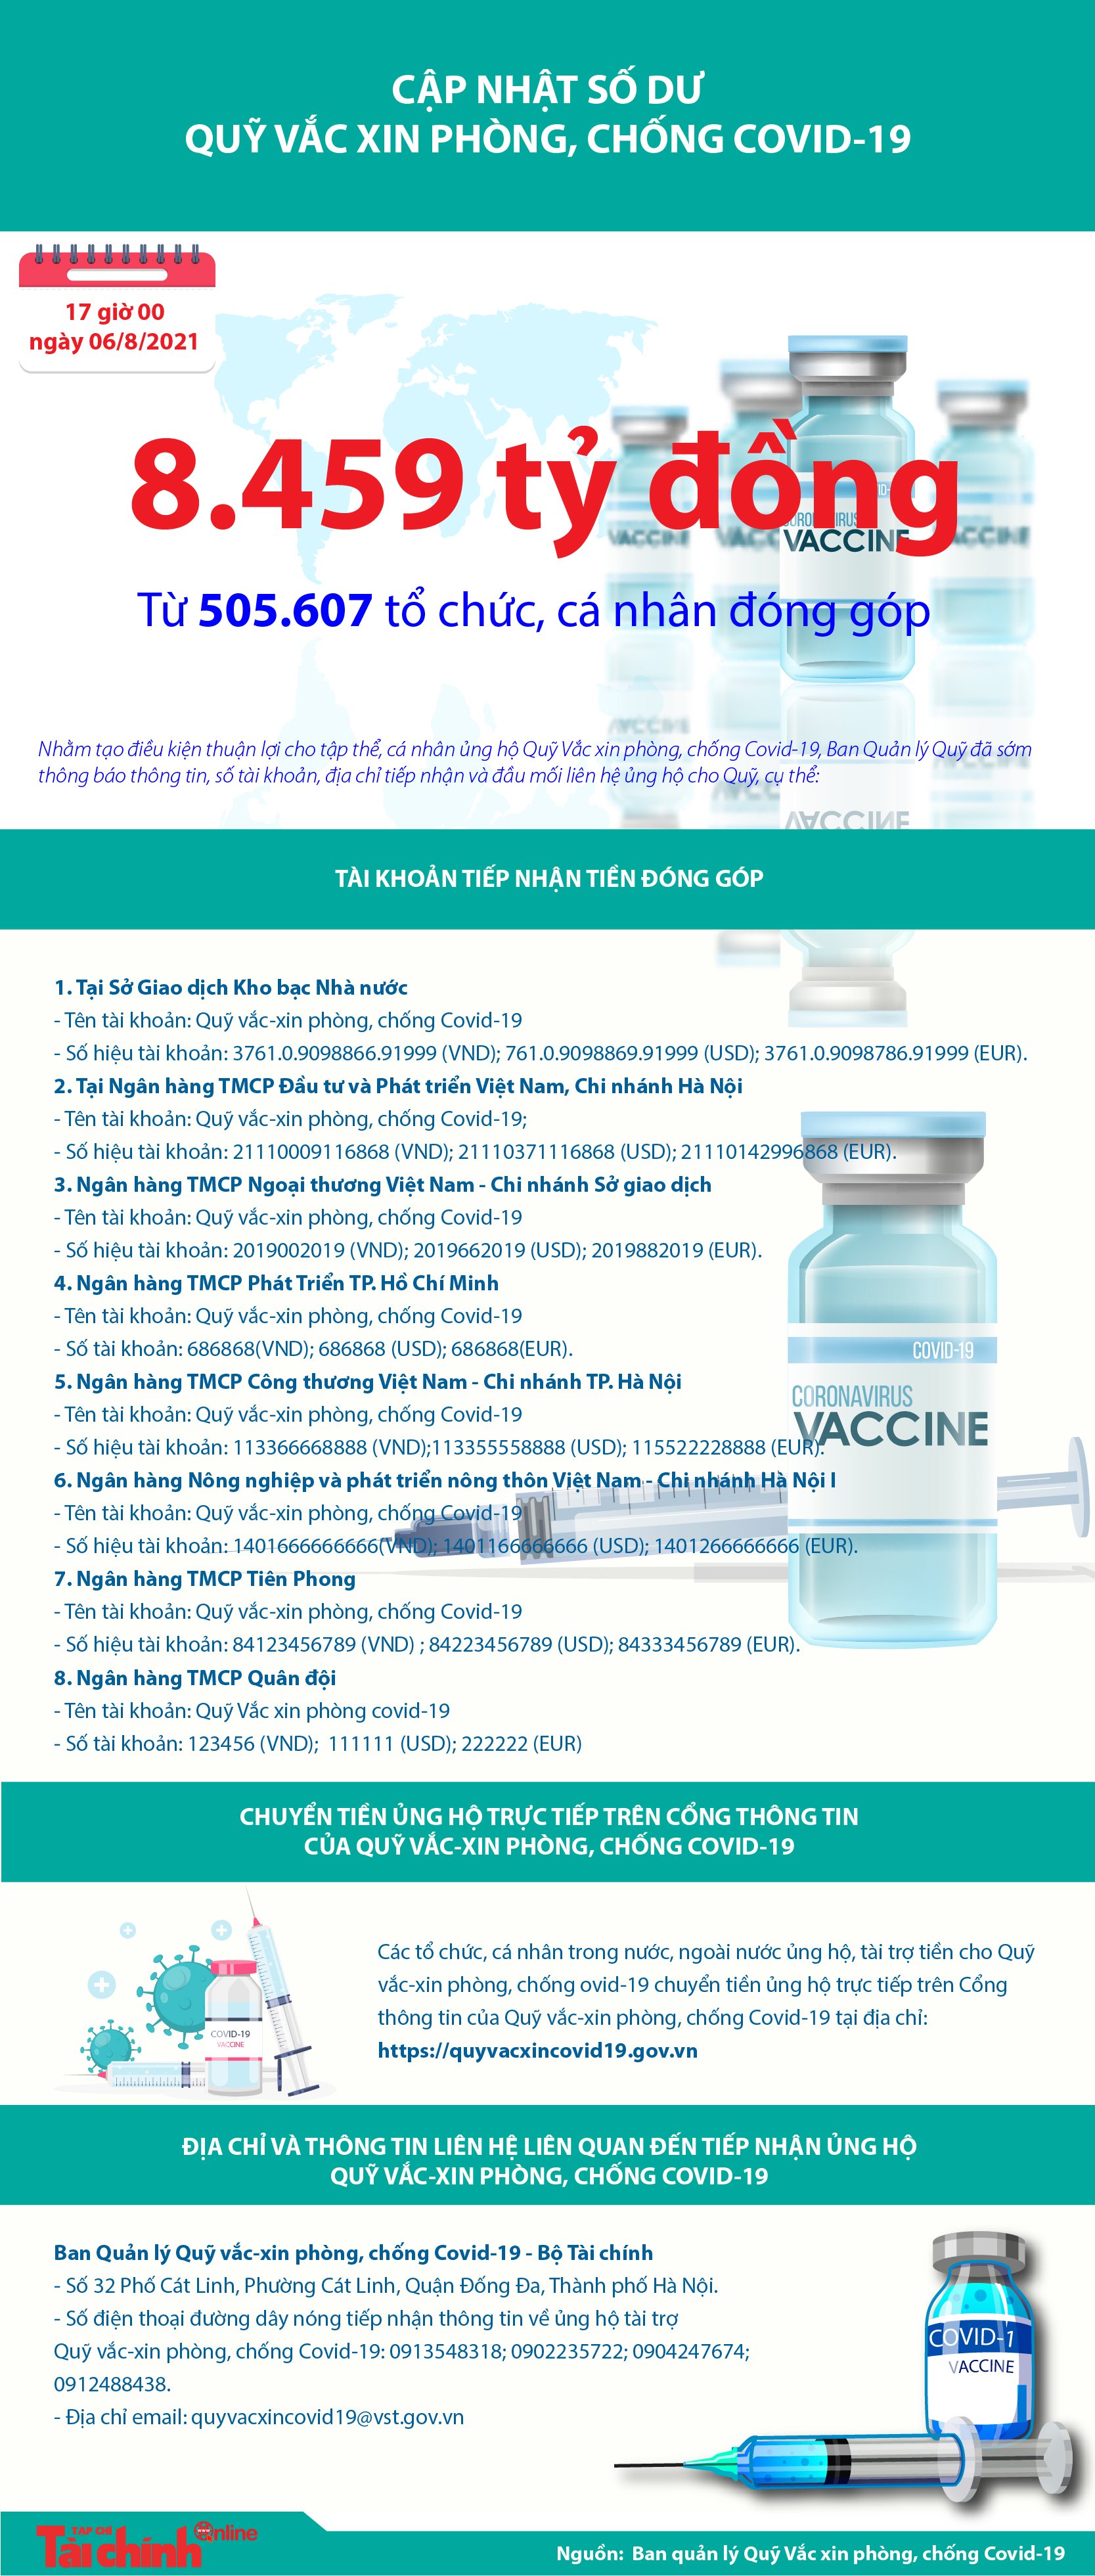 [Infographics] Quỹ Vắc xin phòng, chống COVID-19 đã tiếp nhận ủng hộ 8.459 tỷ đồng - Ảnh 1